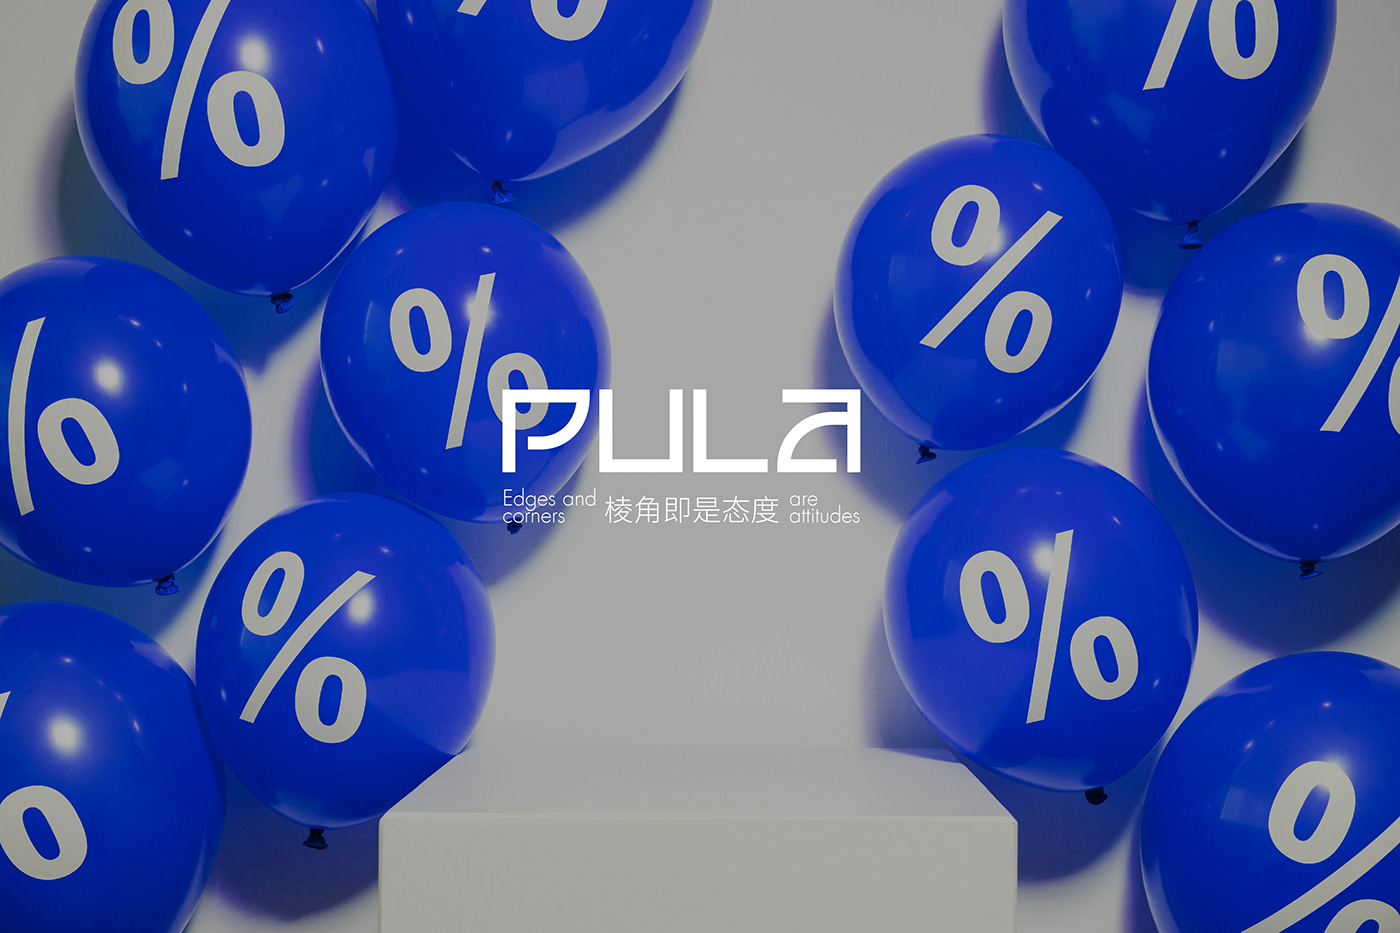 PULA杂物社品牌形象设计